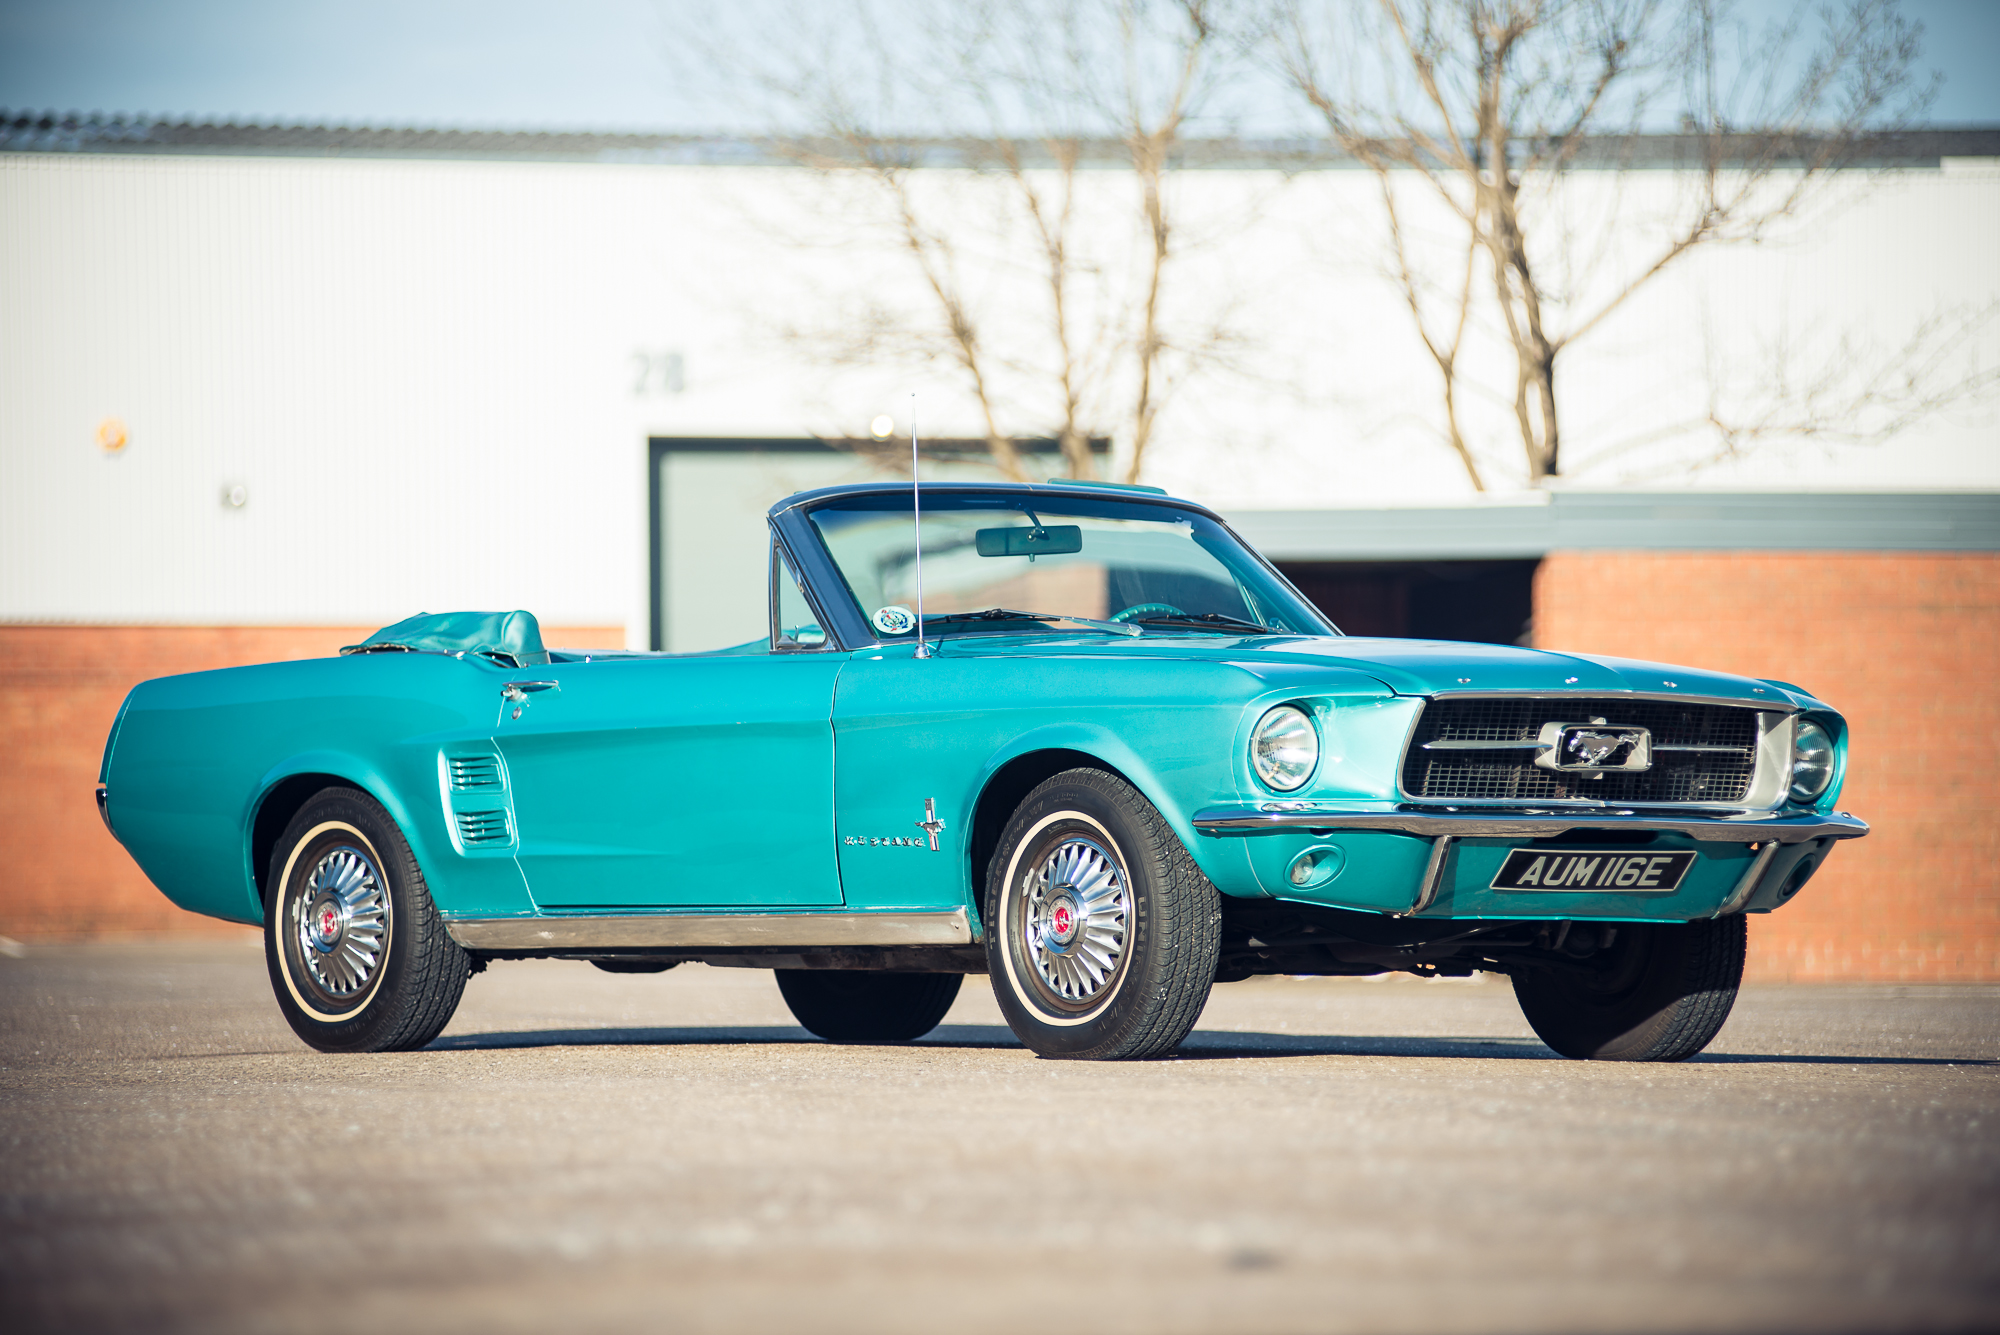 Ford Mustang фотогалерея: 254 фото высокого качества ...